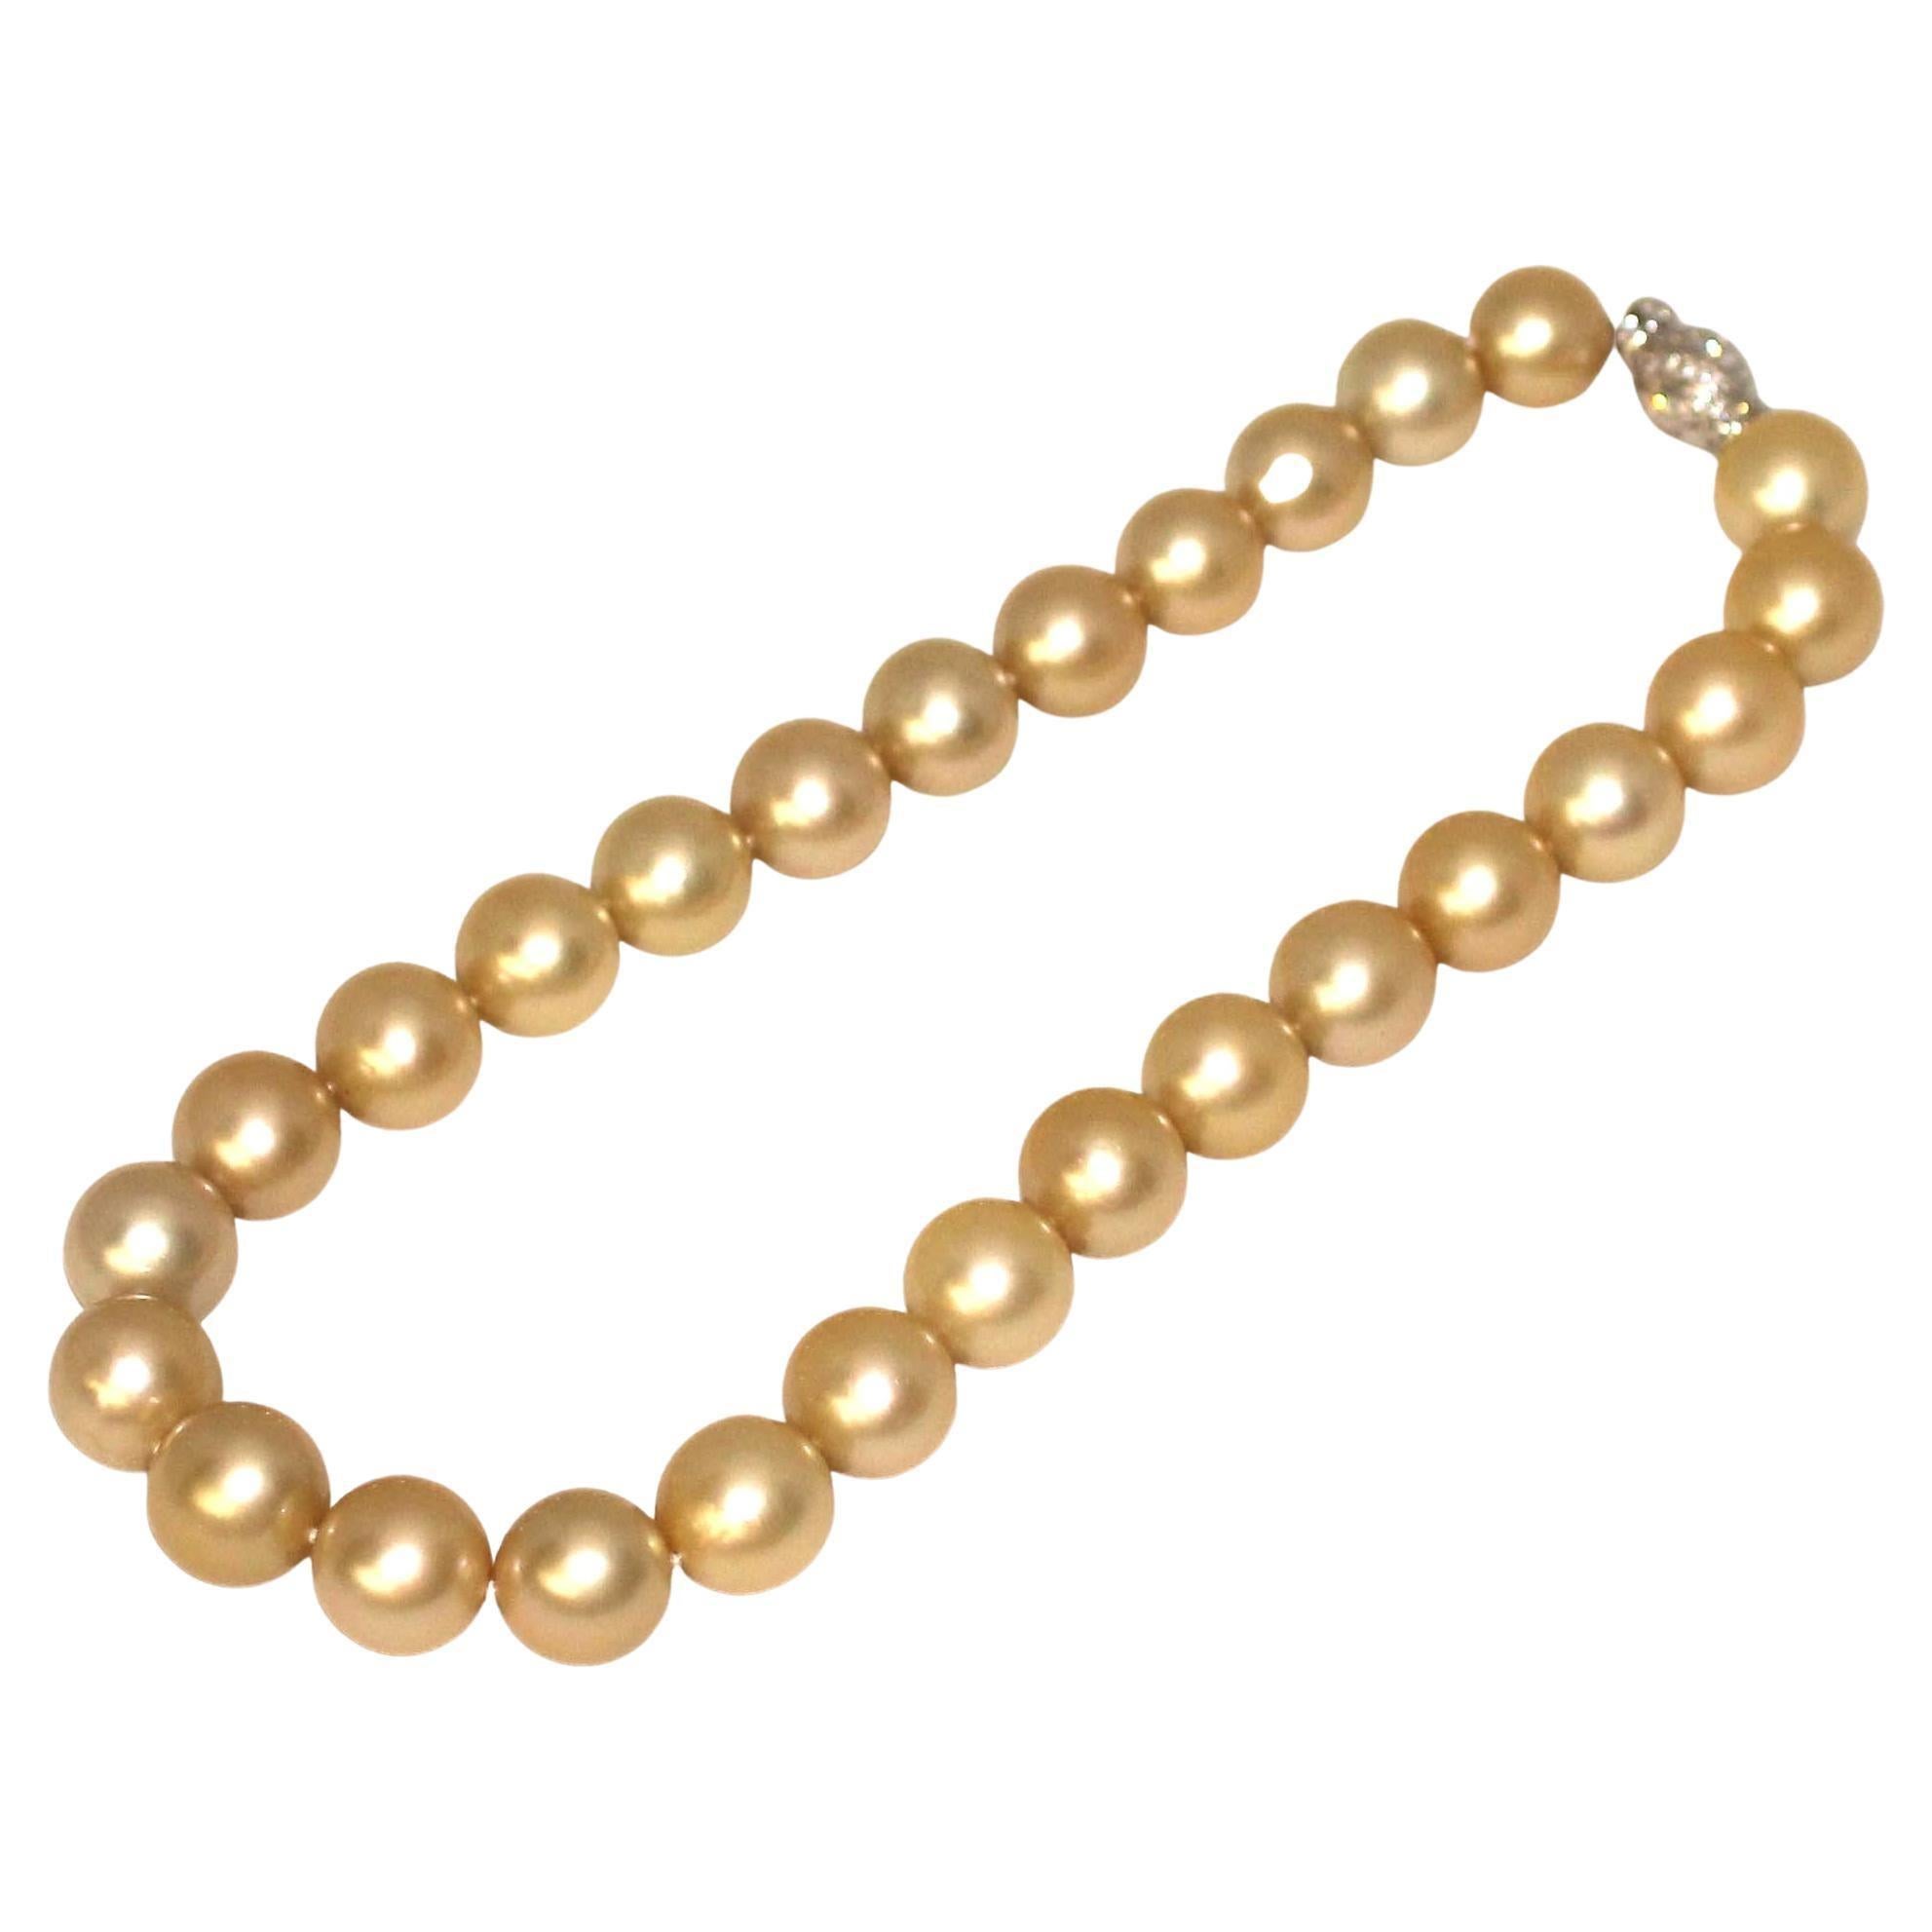 Hakimoto par Jewel Of Ocean
Prix de détail suggéré 60 000
27 Collier de perles dorées des mers du Sud 13x15.3mm
Fermoir en or blanc 18K avec diamant de 1,6 carats
16.5